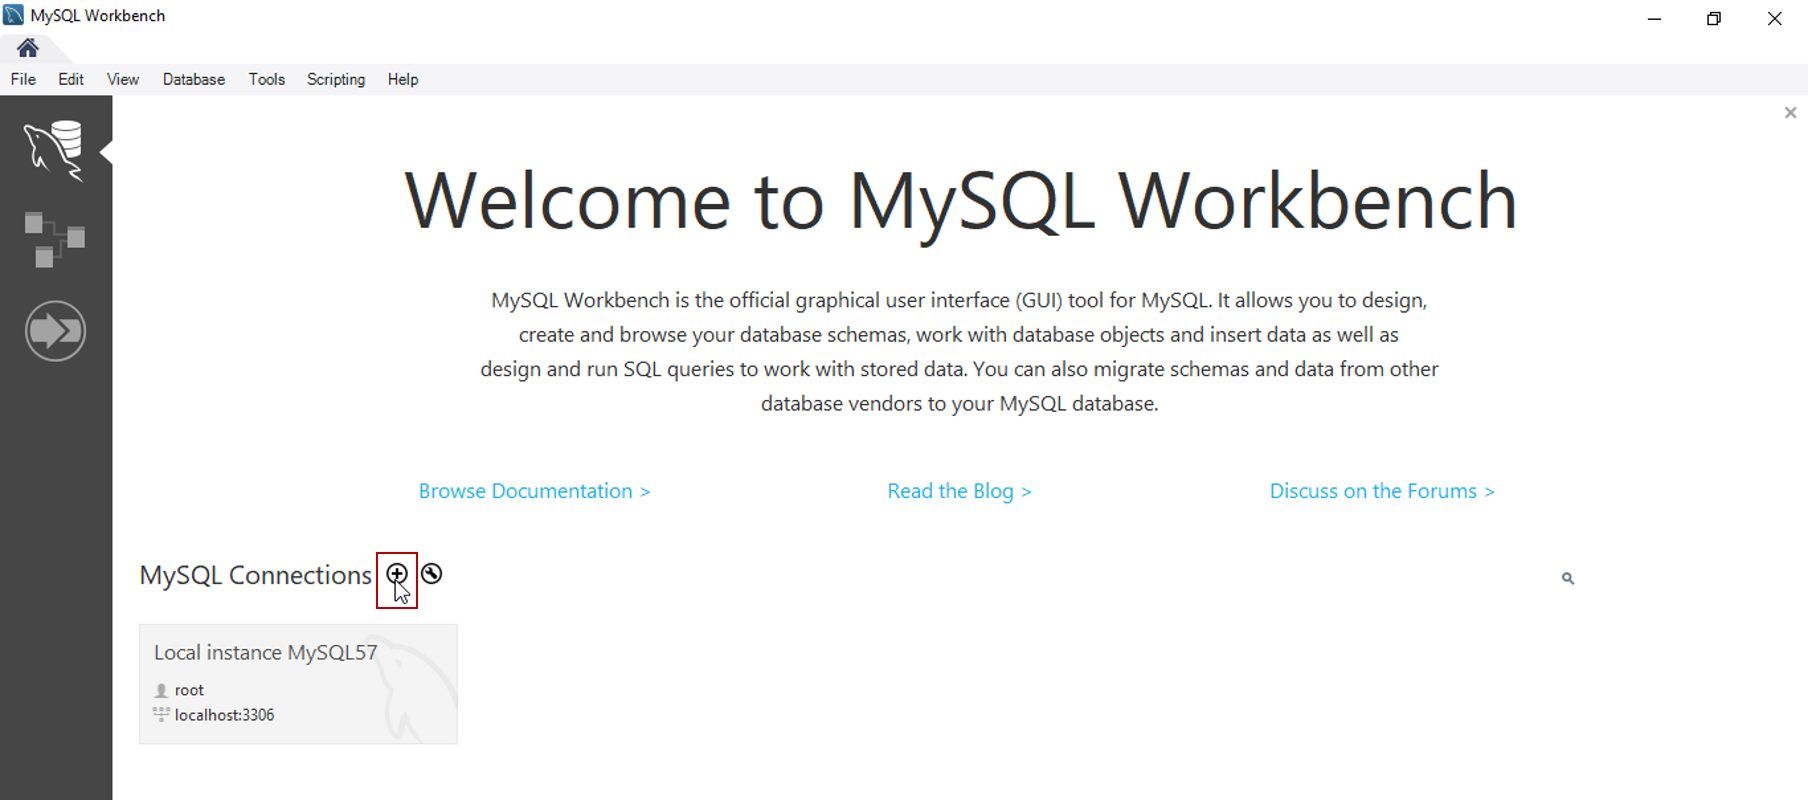 MySQL Workbench Tutorial | How To Use MySQL Workbench | Edureka